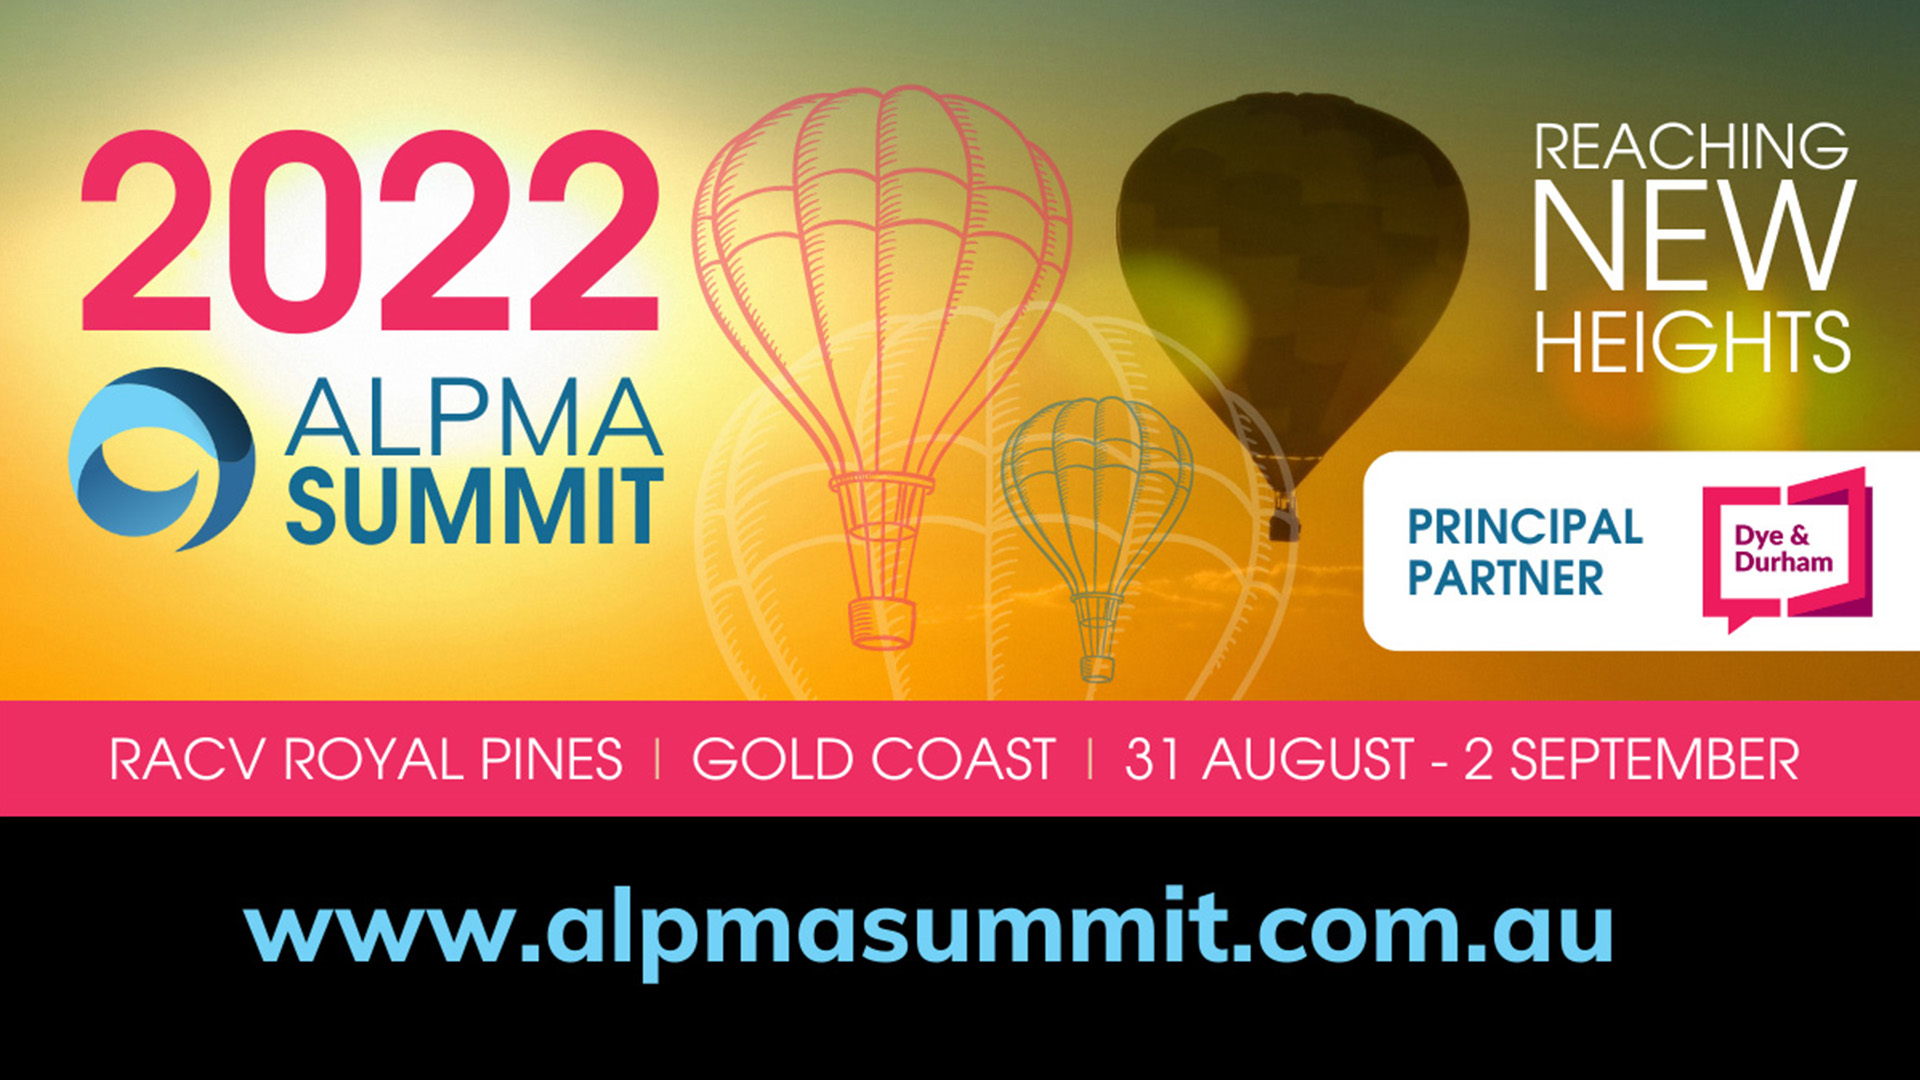 ALPMA Summit 2022